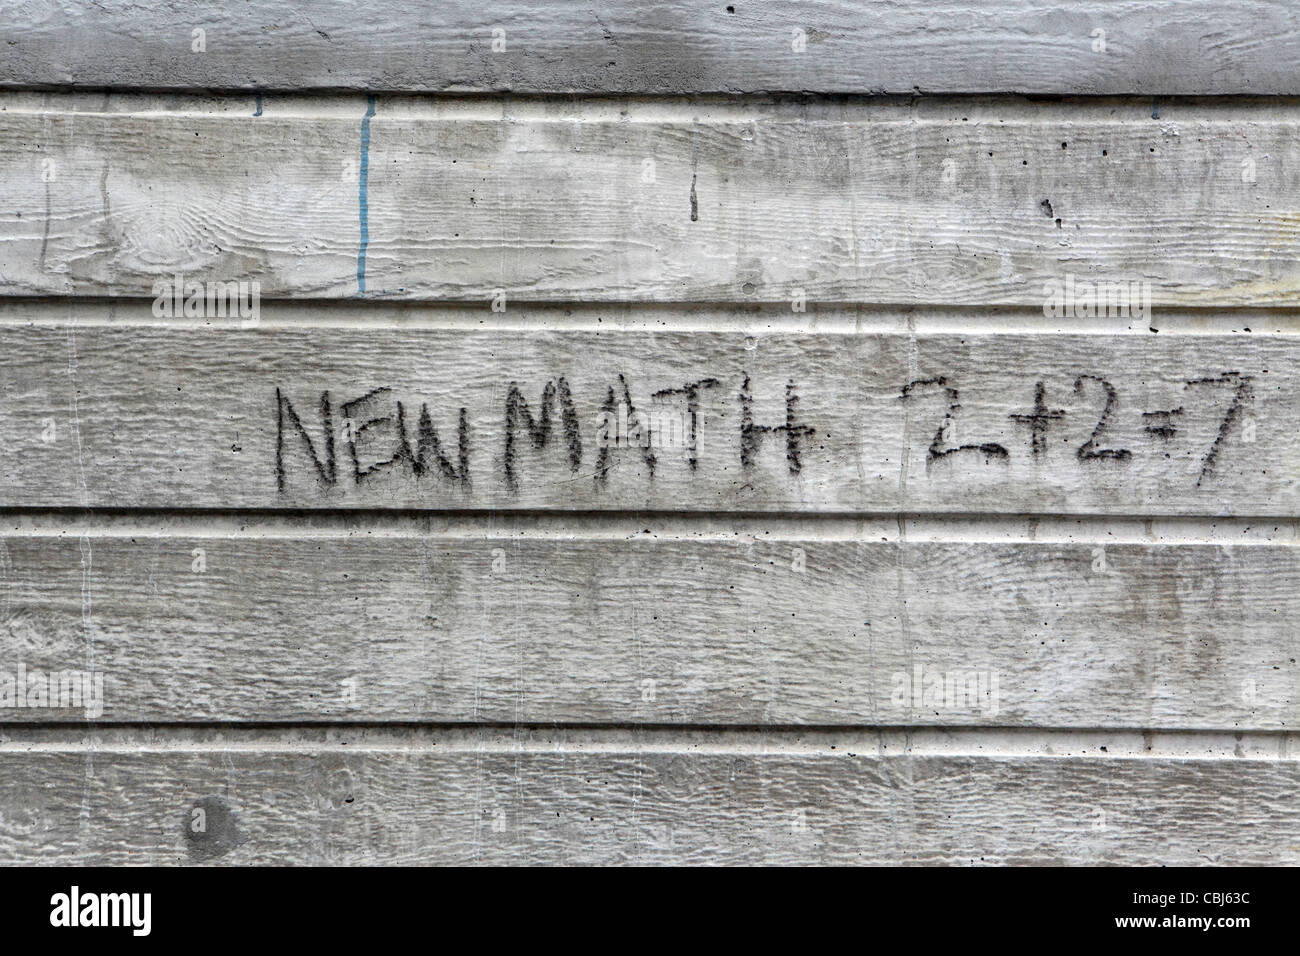 2+2=7, New Math Graffiti, New York City, NYC, USA. Stock Photo